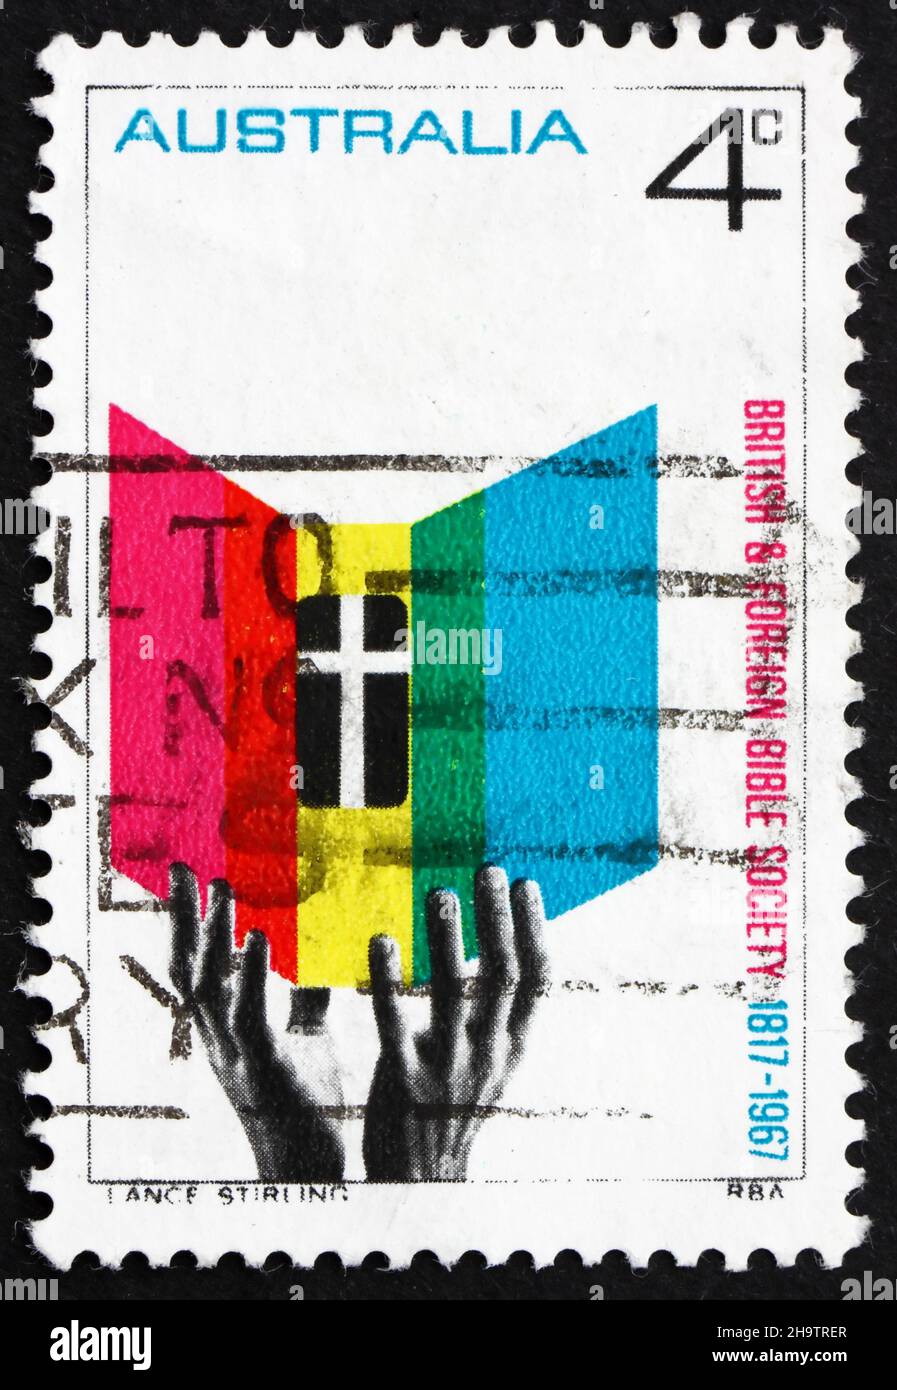 AUSTRALIEN - UM 1966: Eine in Australien gedruckte Briefmarke zeigt Hände, die nach der Bibel greifen, 150th. Jahrestag der britischen und ausländischen Bibelgesellschaft, circa Stockfoto